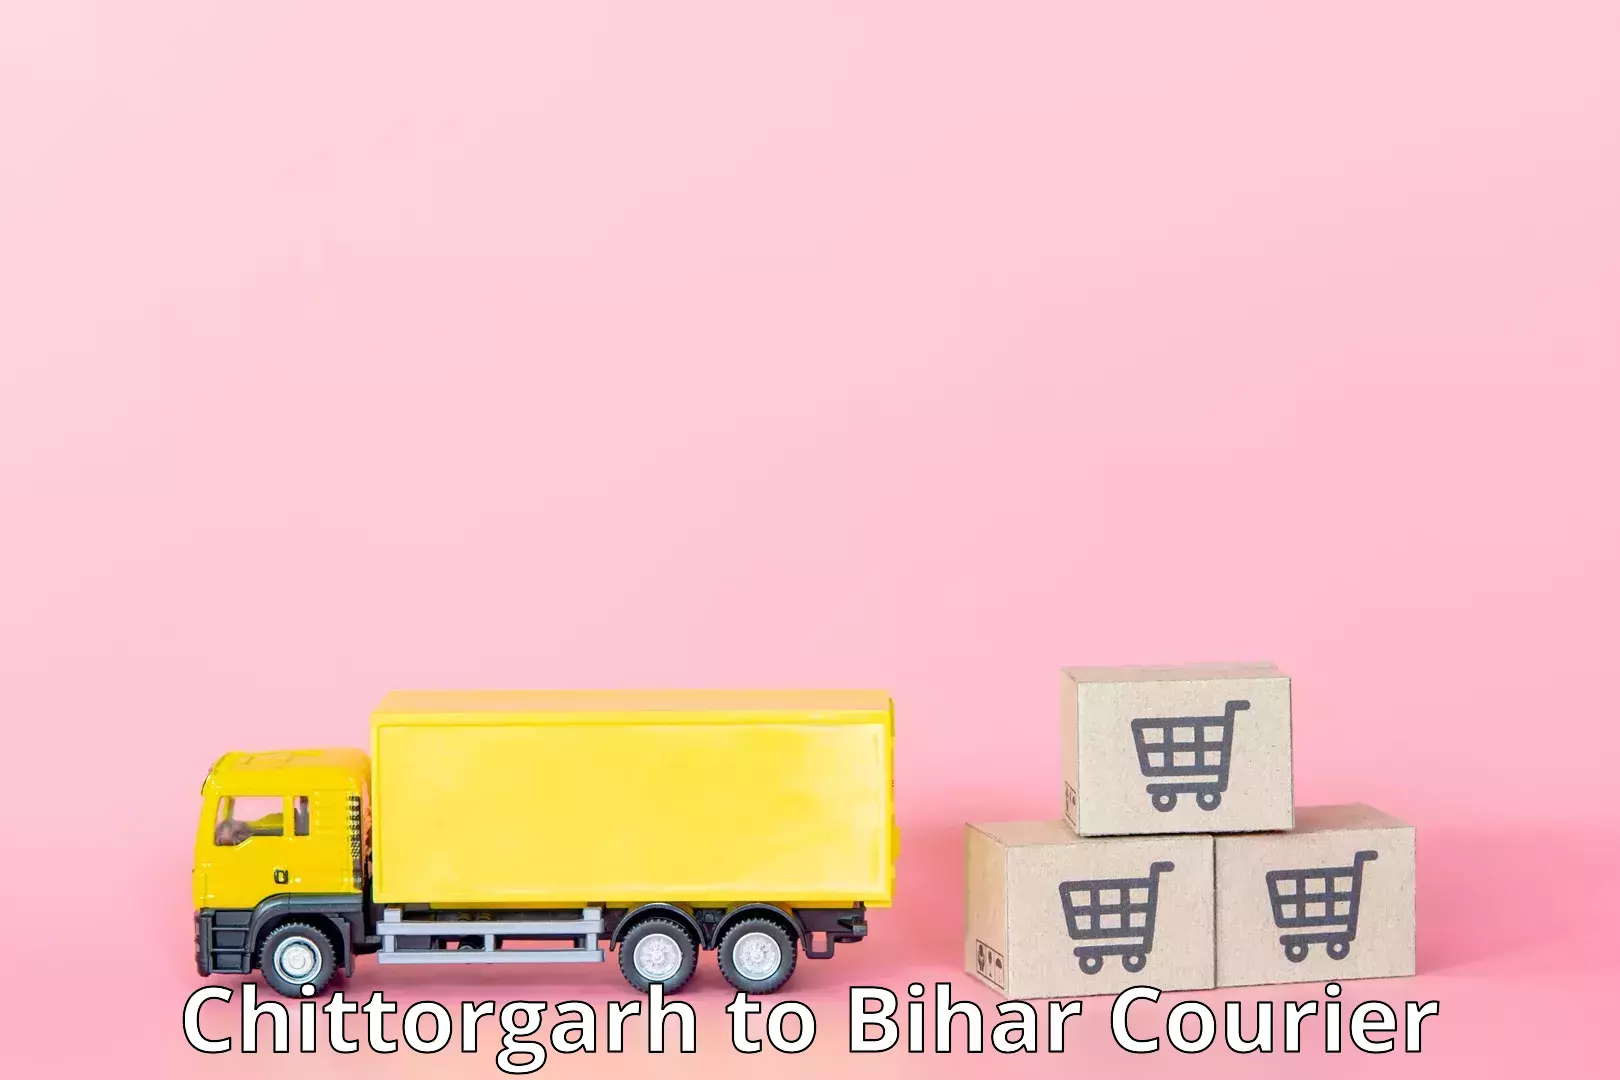 Cargo delivery service Chittorgarh to Bihar